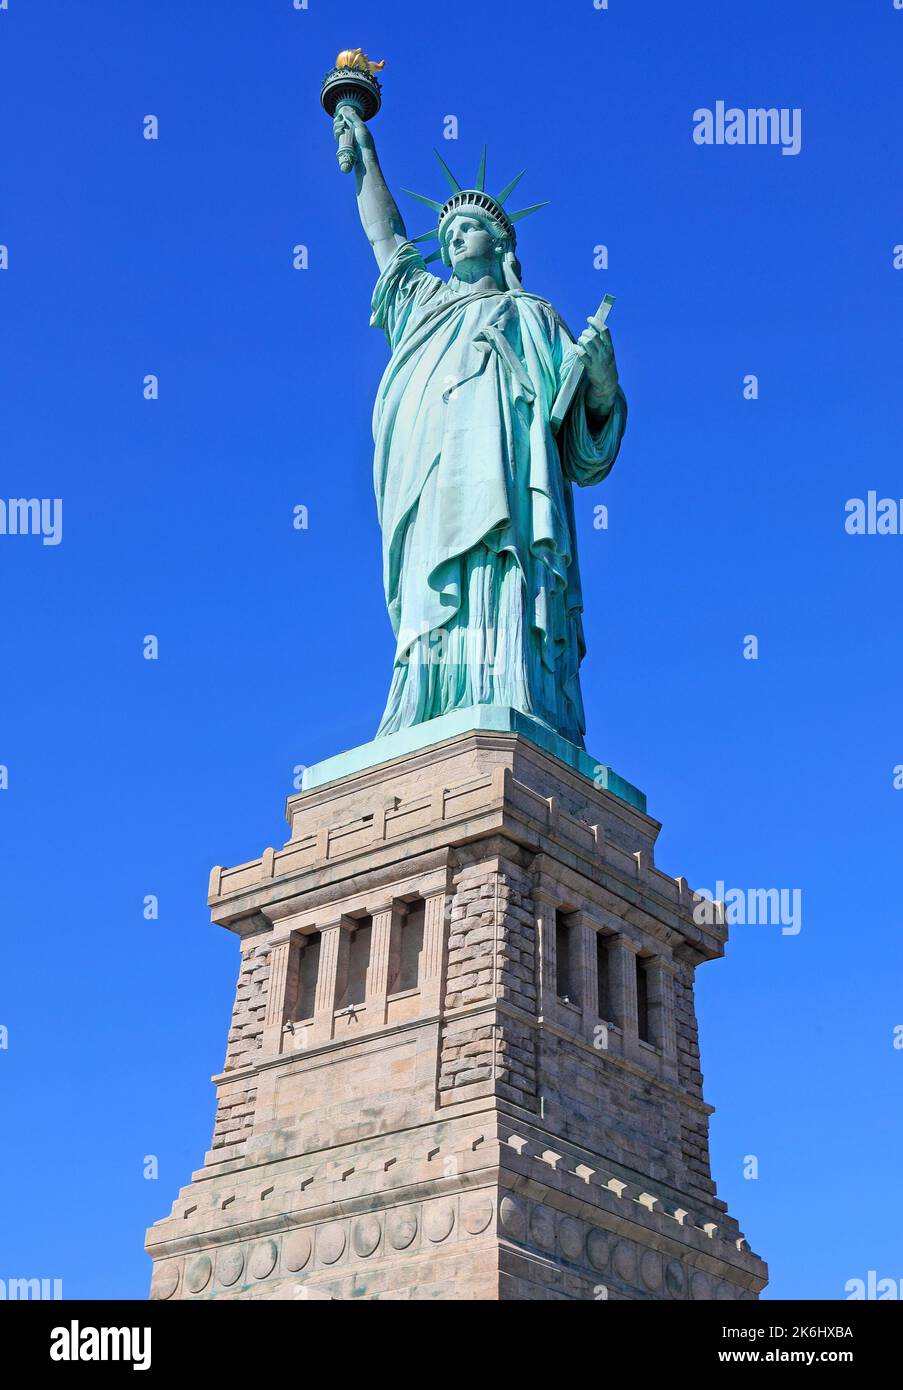 Statue de la liberté, New York City, États-Unis. Inclut une partie de la base sur laquelle se trouve la stature Banque D'Images